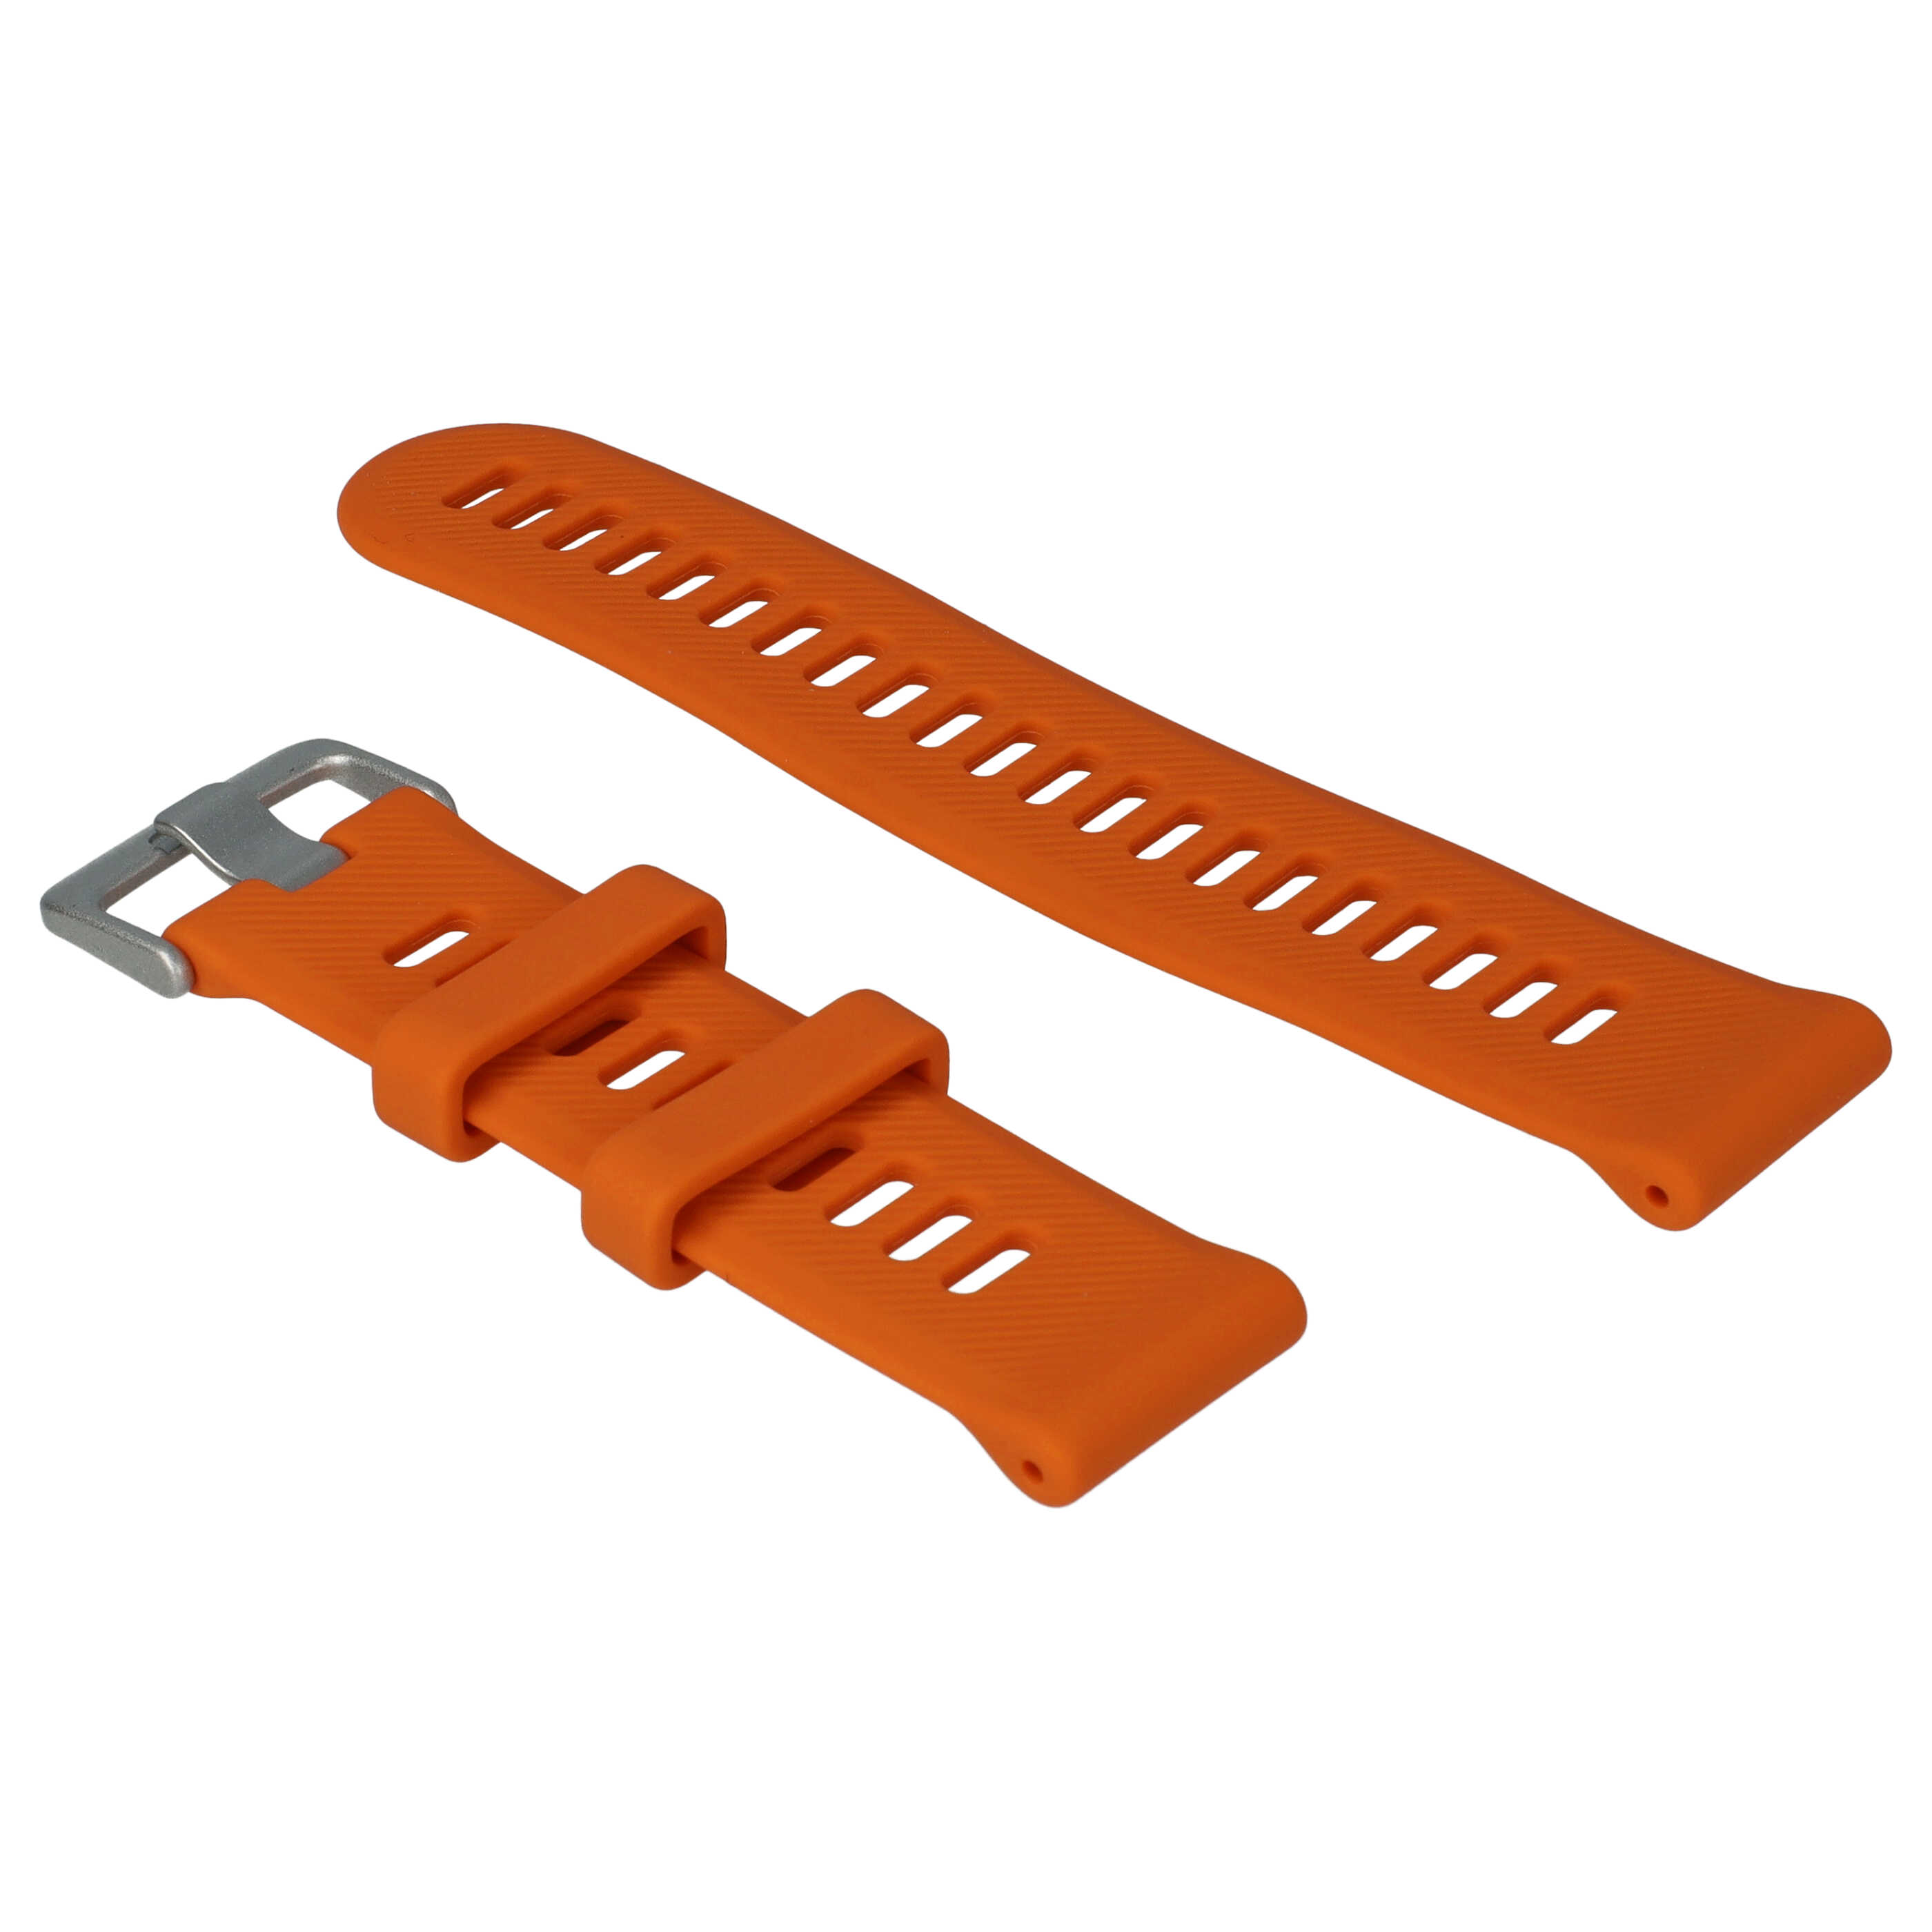 Armband für Garmin Forerunner Smartwatch - 9 + 12,2 cm lang, 22mm breit, Silikon, orange